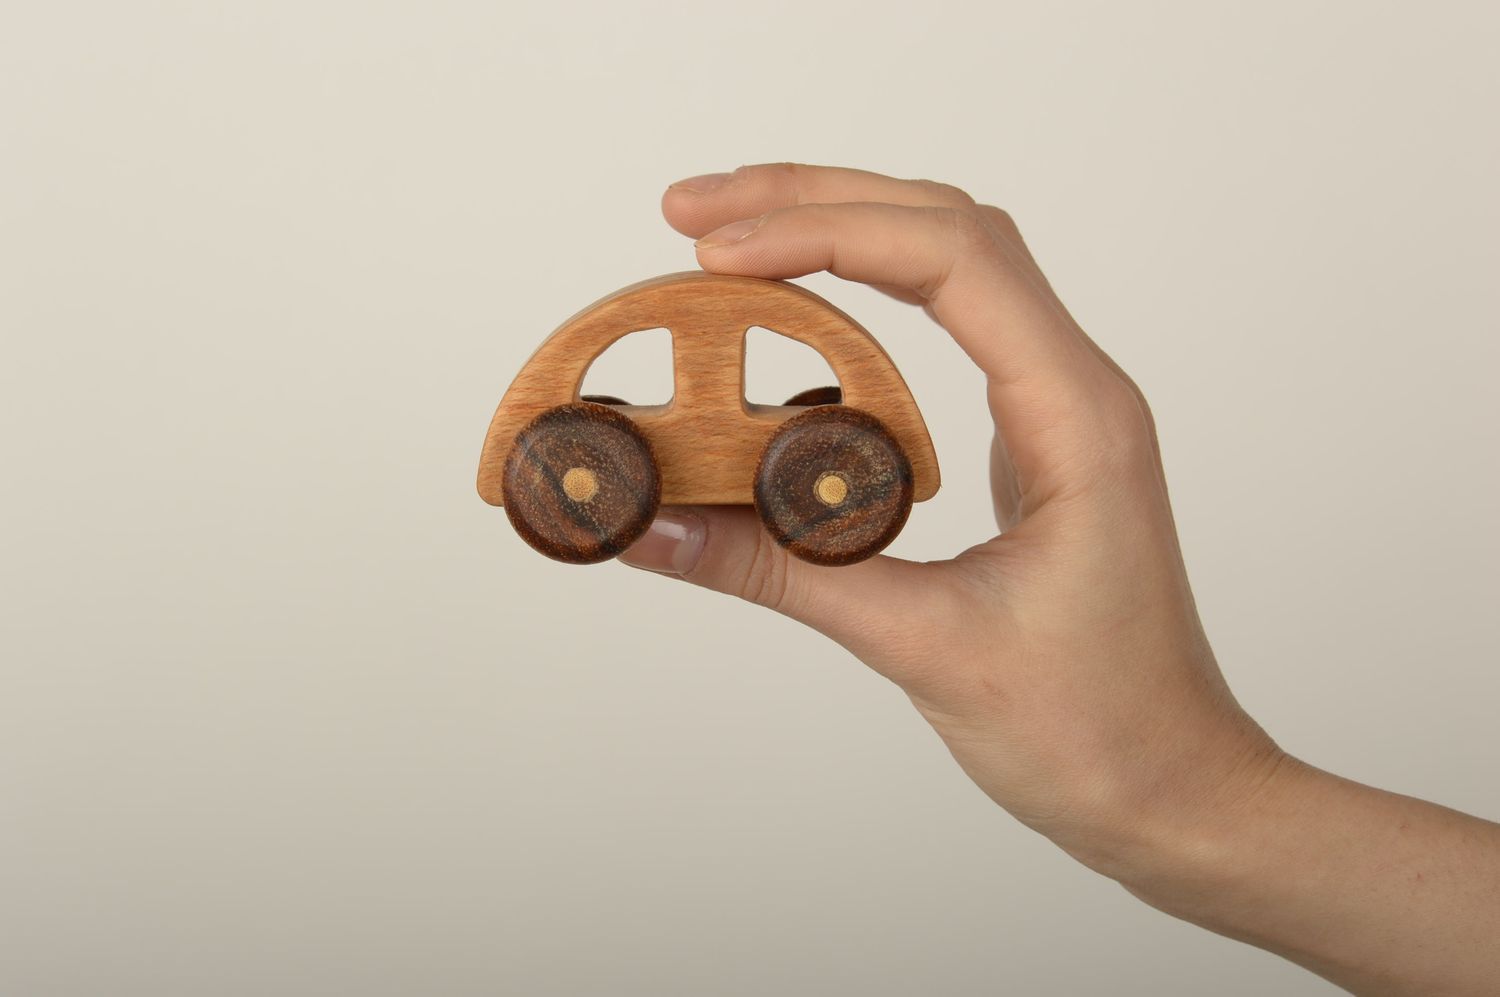 Spielzeug aus Holz handmade Spielzeug Auto Holzspielzeug Öko in Braun schön foto 1